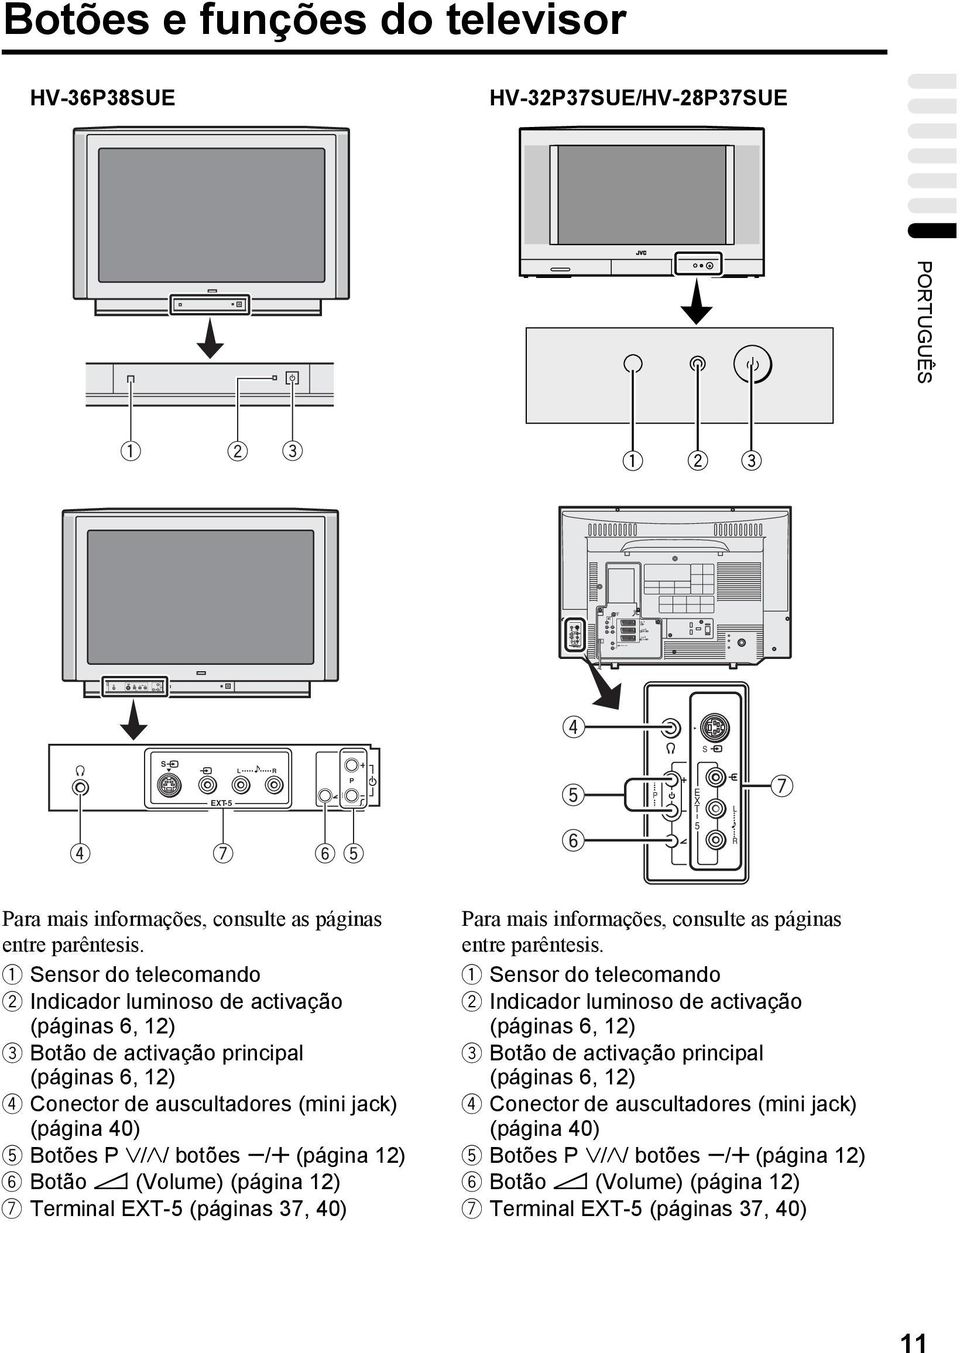 1 Sensor do telecomando 2 Indicador luminoso de activação (páginas 6, 12) 3 Botão de activação principal (páginas 6, 12) 4 Conector de auscultadores (mini jack) (página 40) 5 Botões P p/ botões q